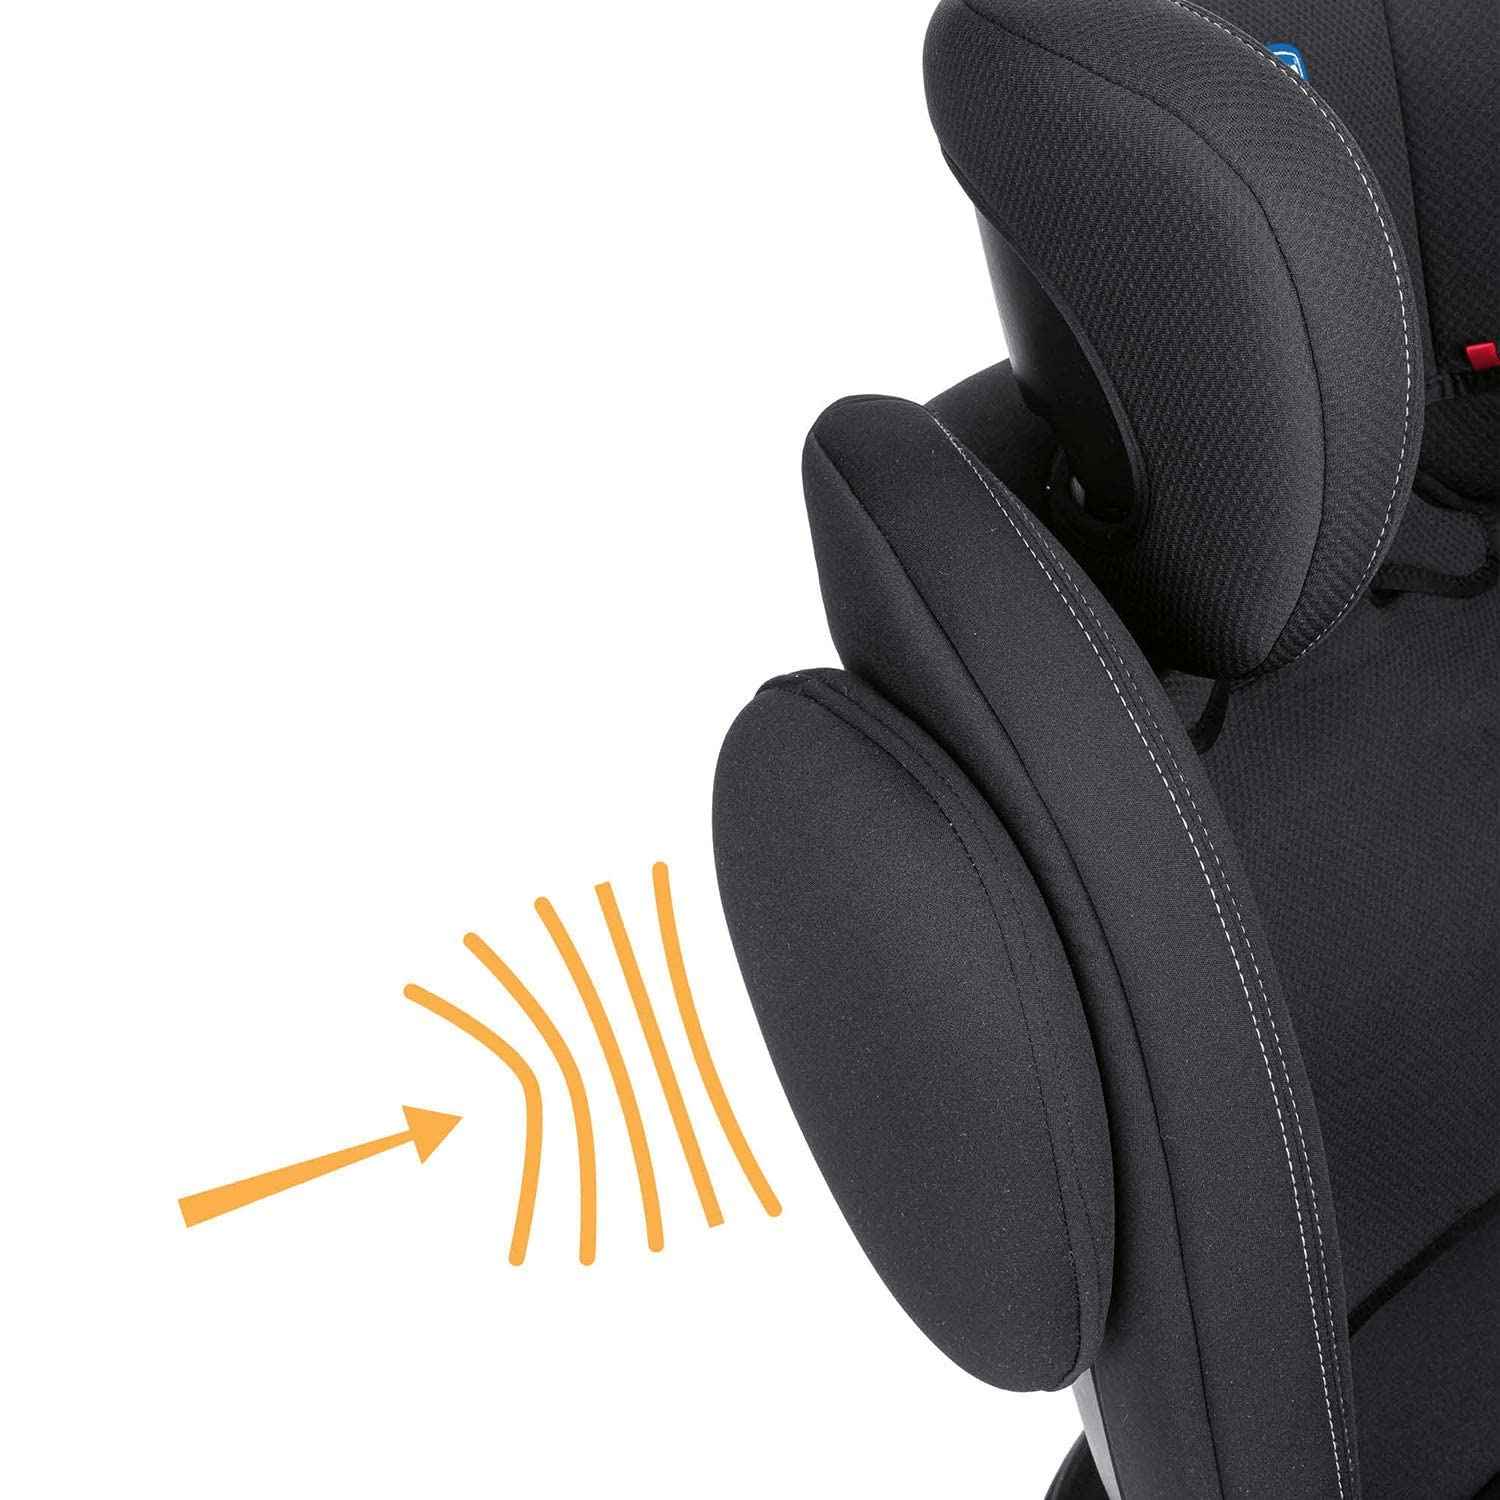 Cadeira Auto Unico Plus Black com Isofix - Chicco 360°